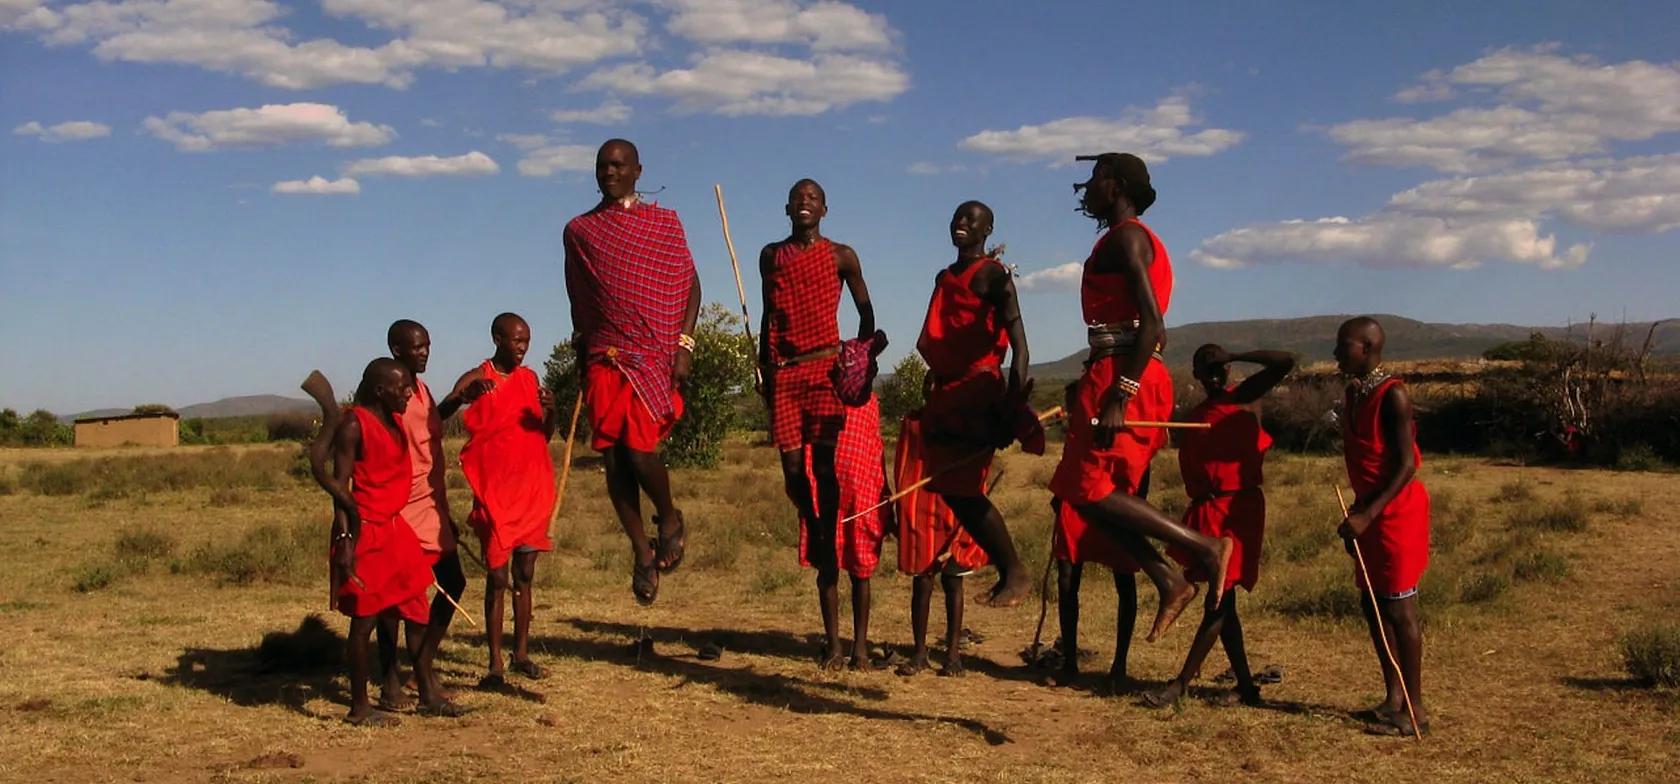 Masaierne er kendt for deres hoppende krigere. Foto Carsten Willersted